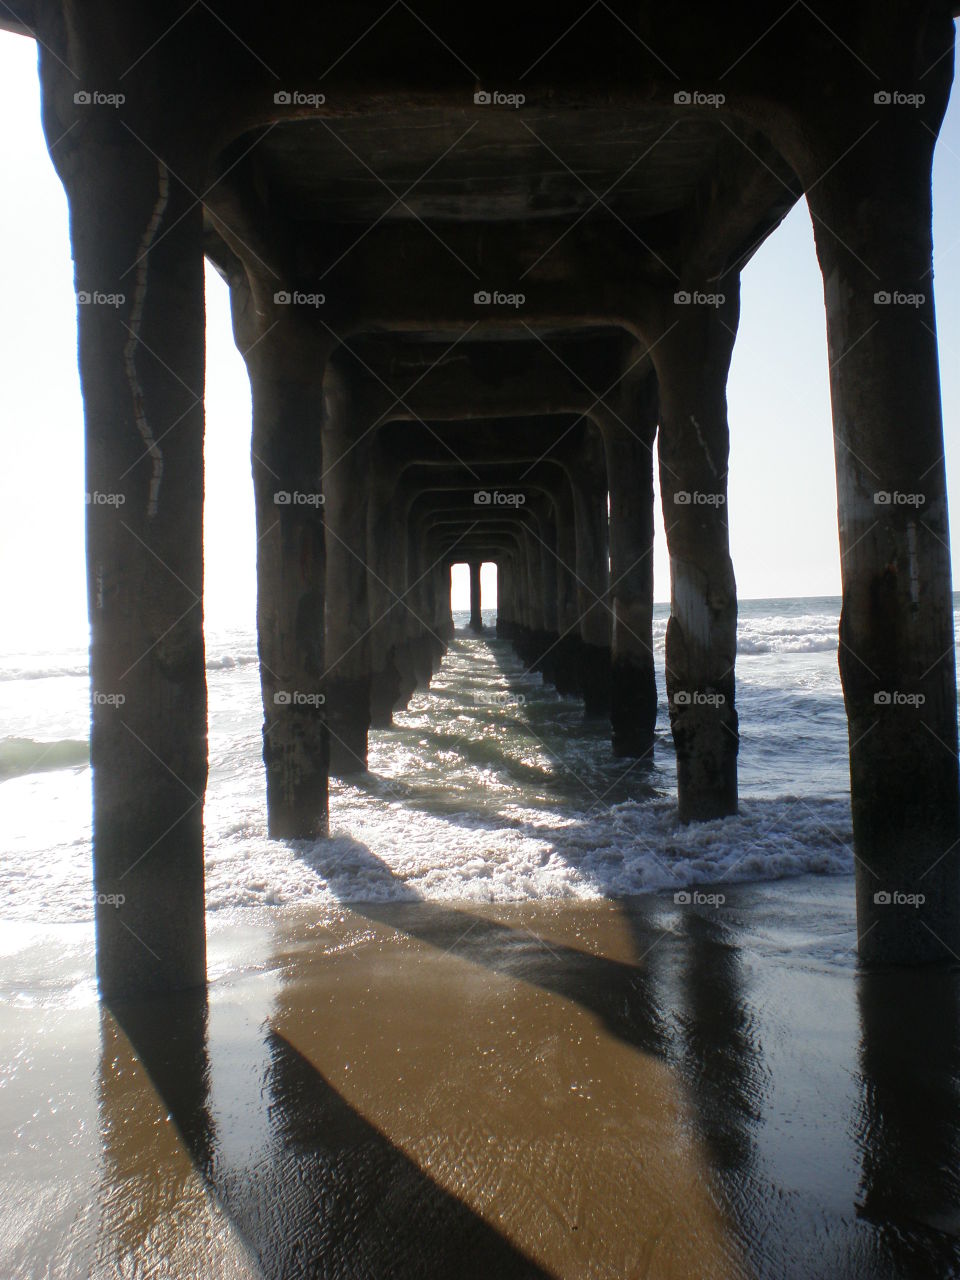 Under the Pier